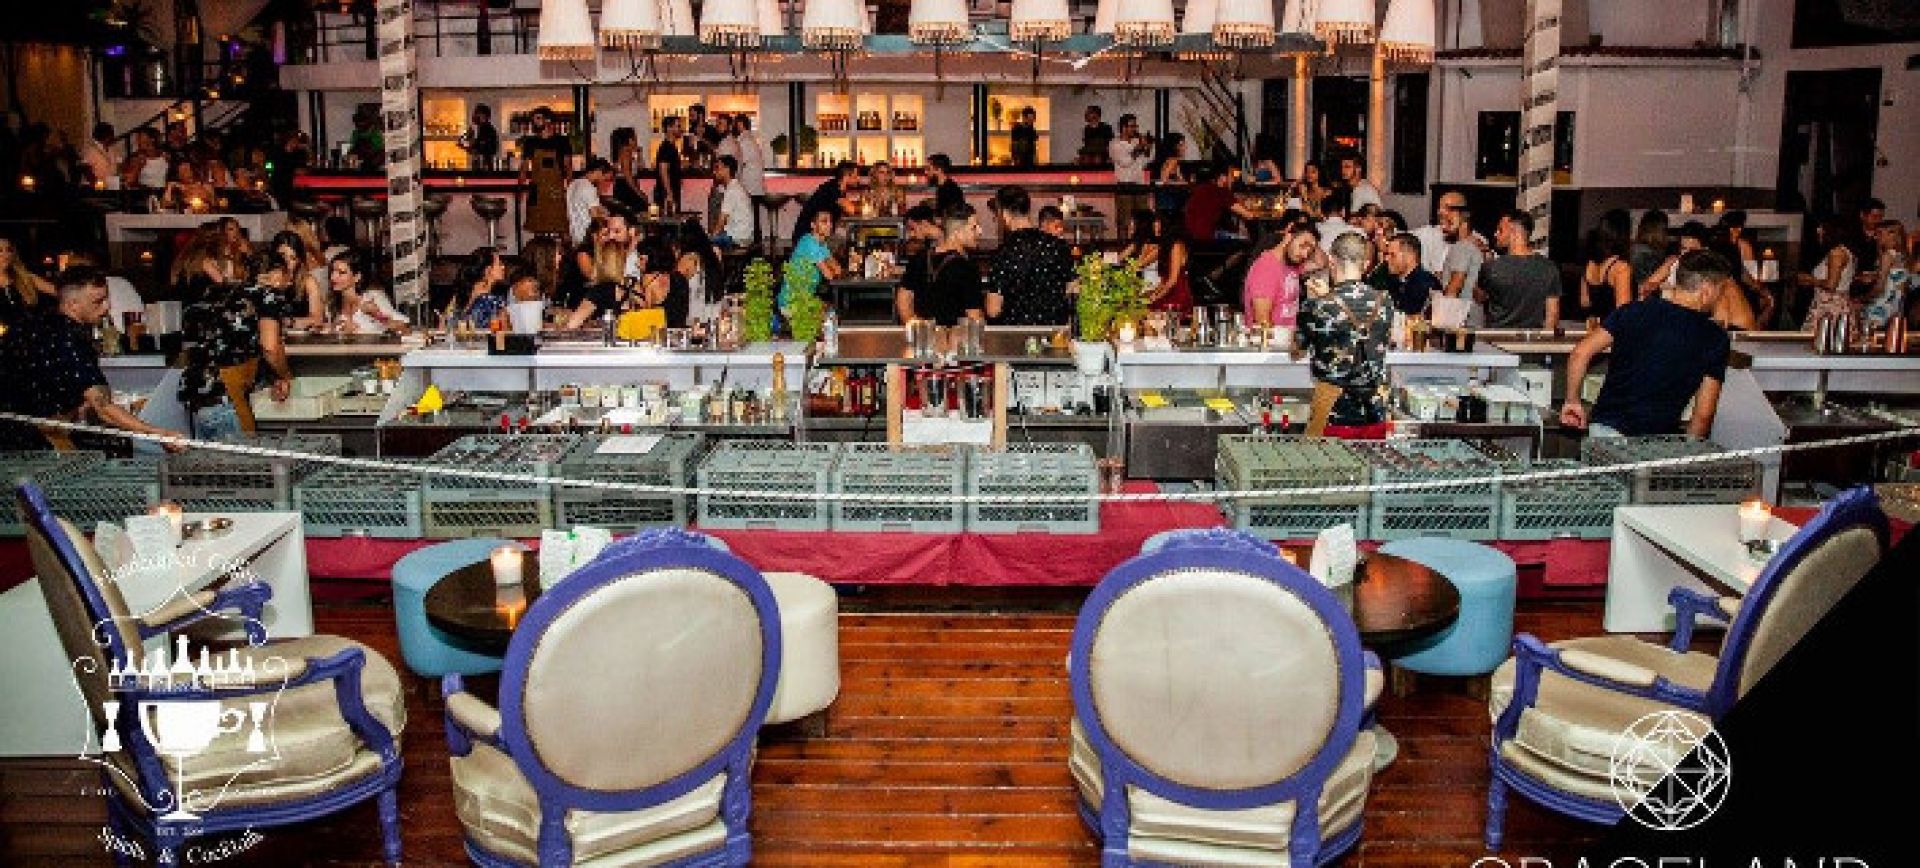 Το καλύτερο μπαρ στην Ελλάδα… είναι στον Βόλο! – Τα «Αθηνόραμα Bar Awards» μίλησαν!